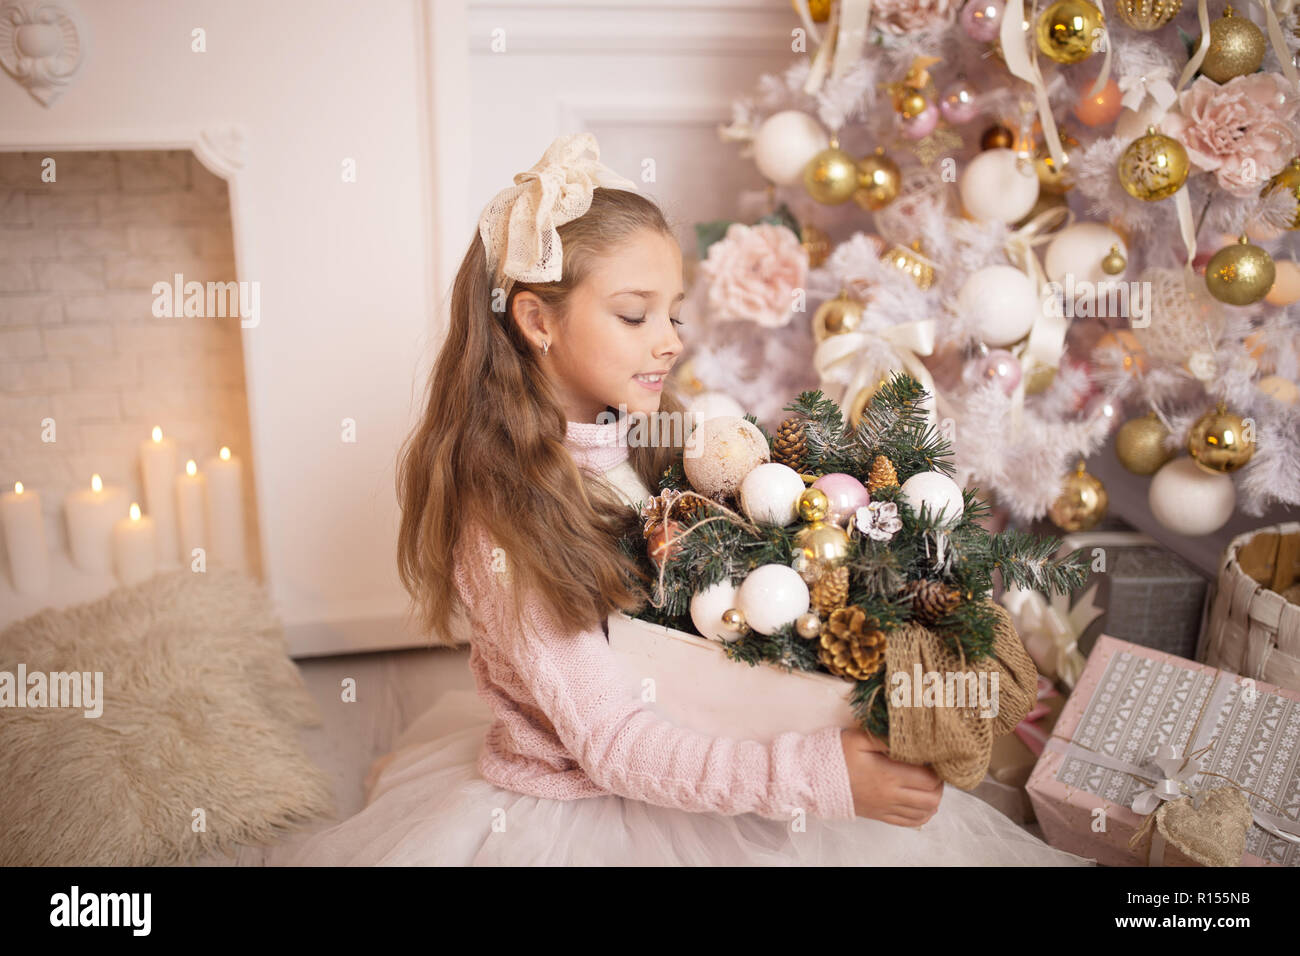 Frohe Weihnachten feiern. Schöne Mädchen in einem Kleid sitzt in der Nähe der Weihnachtsbaum. Winterurlaub. Frohes neues Jahr. Stockfoto